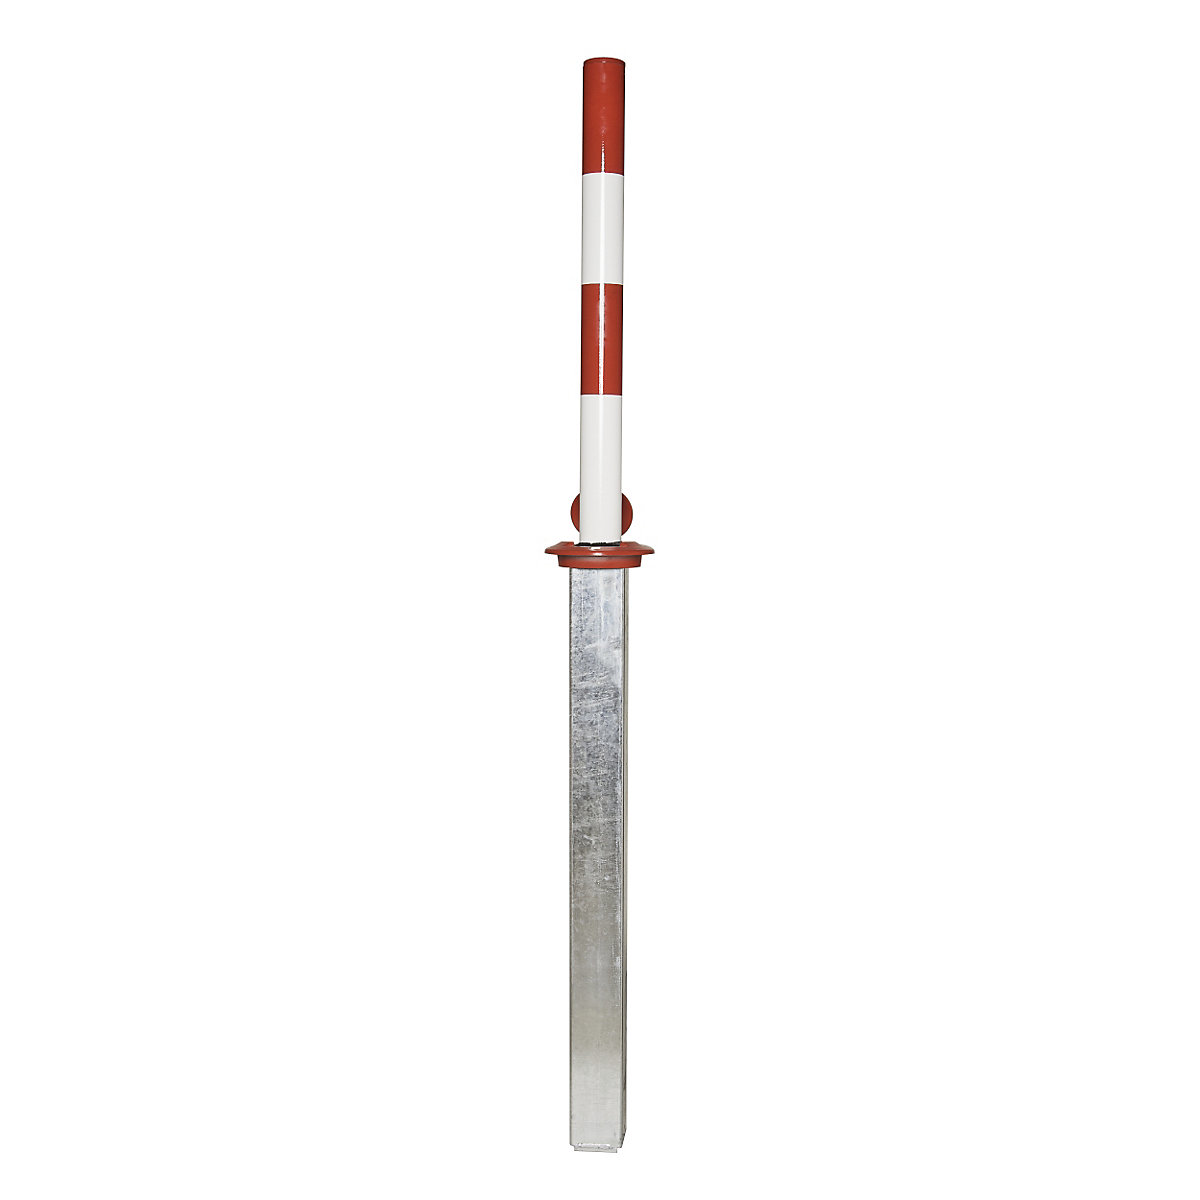 Stup za ograđivanje, s mogućnošću poluautomatskog spuštanja, u crveno-bijeloj boji-5